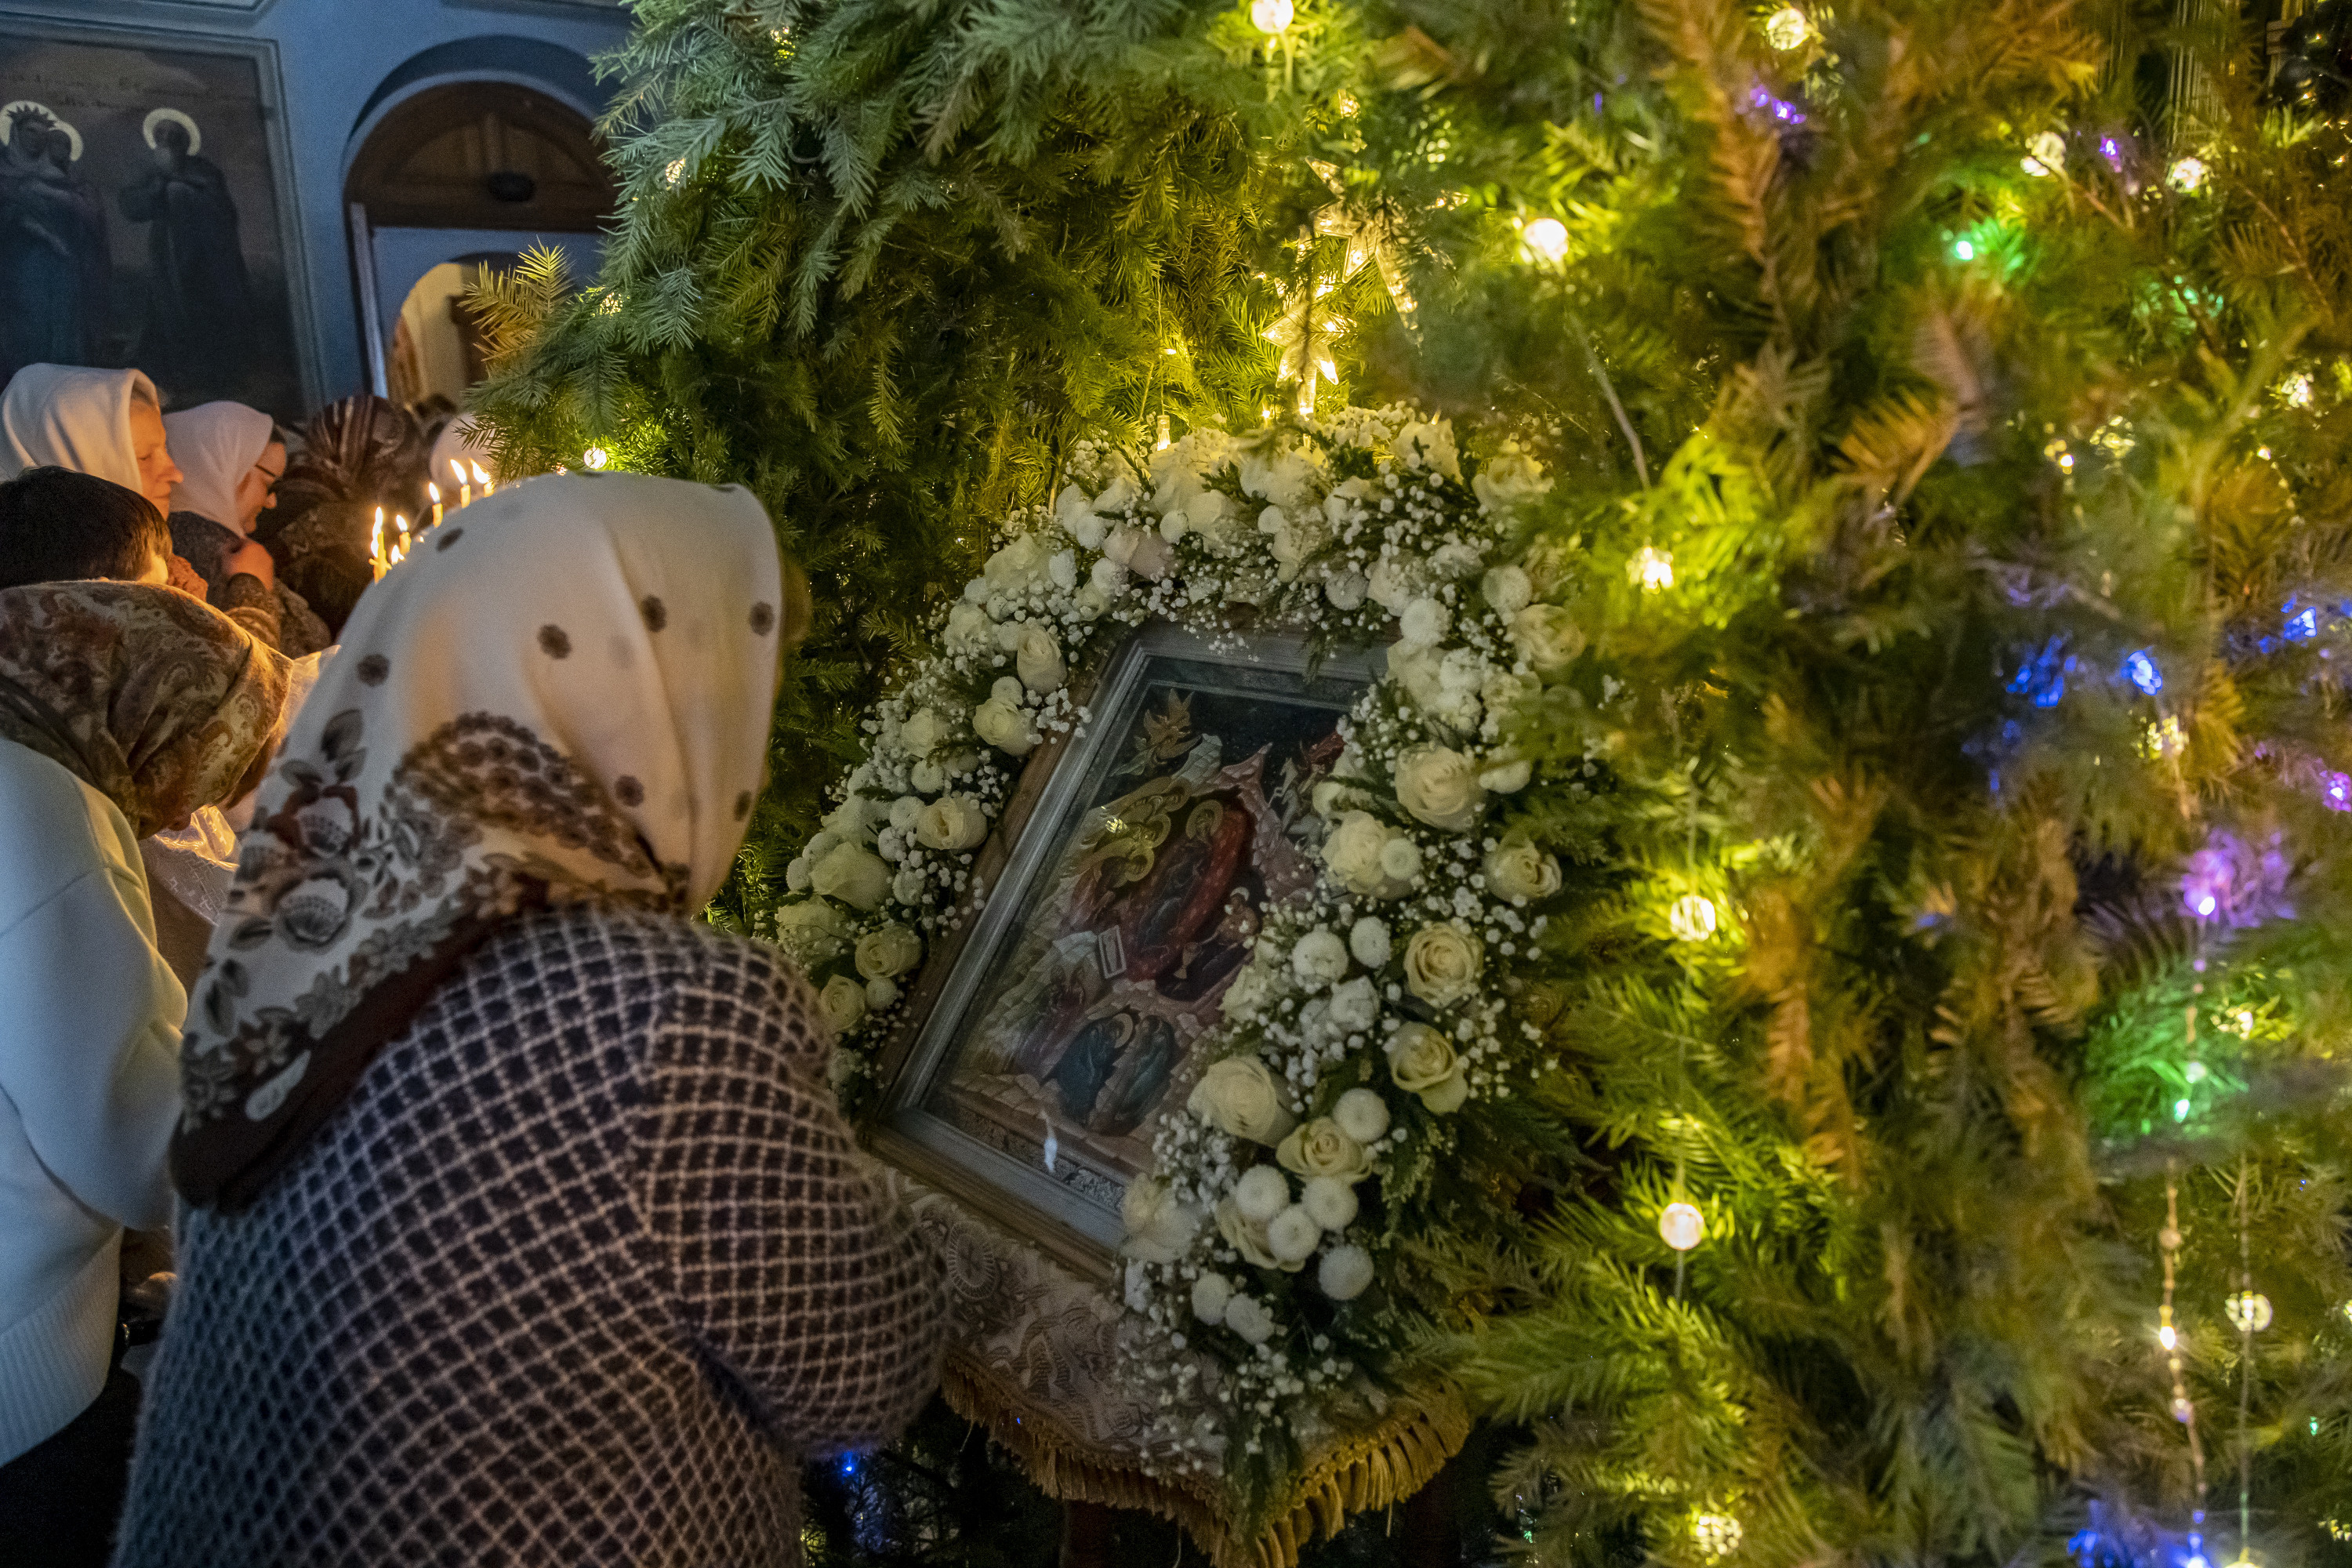 Православные перед Рождеством держат <nobr>40-дневный</nobr> пост. В течение этого времени они не едят мясные и молочные продукты, а также яйца